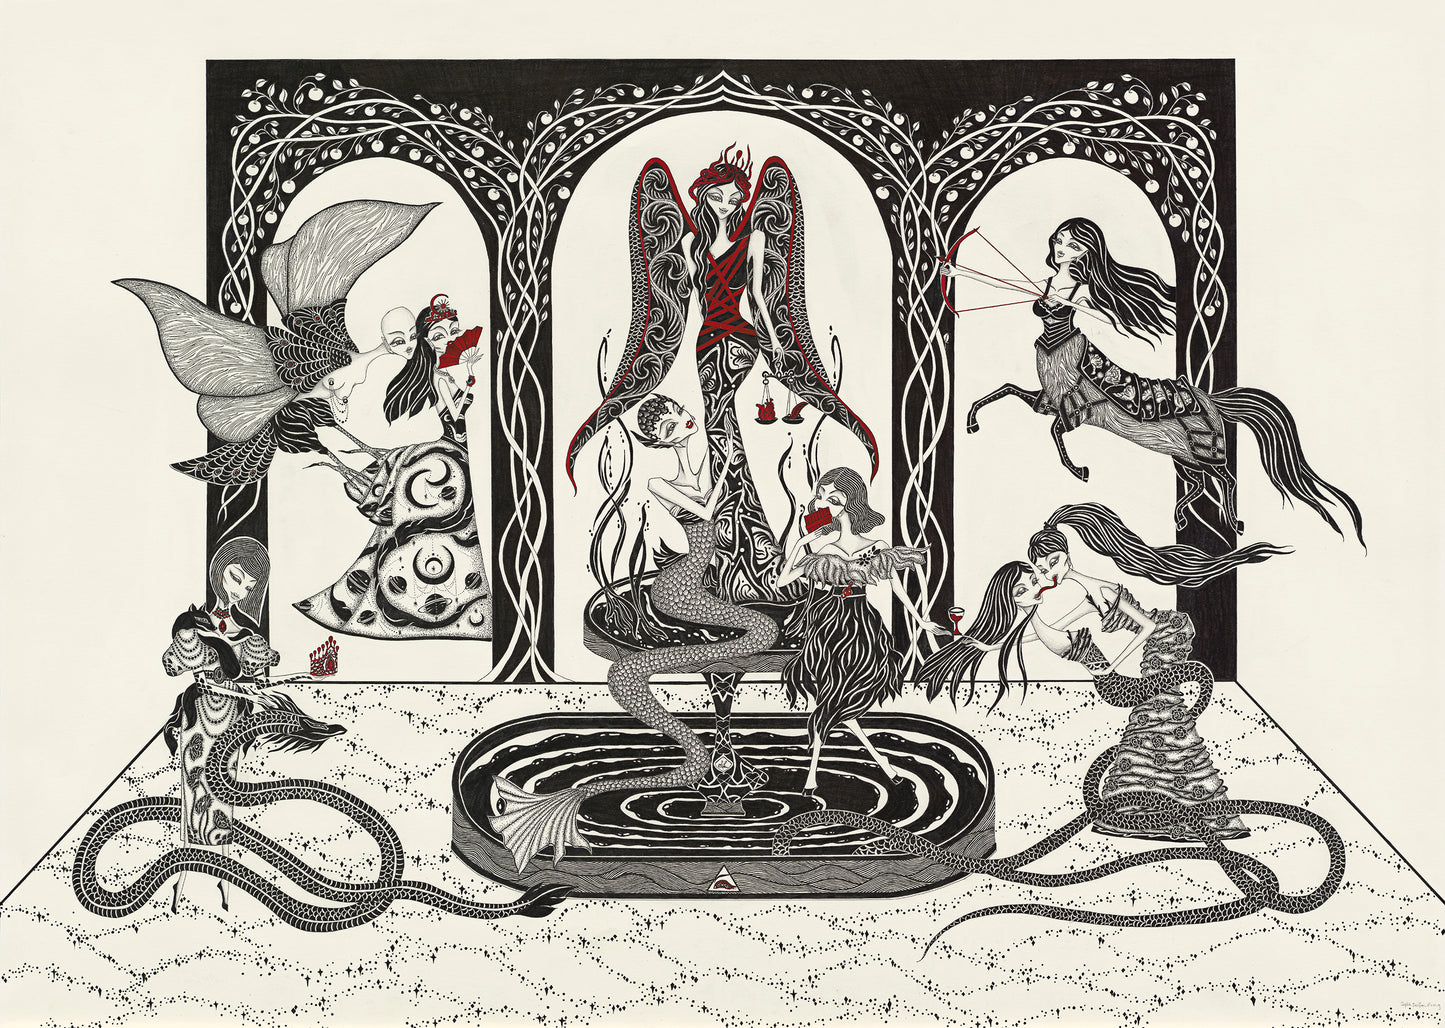 The Devils' temptation 02, Ink, postercolor, 109.5 x 78.7 cm